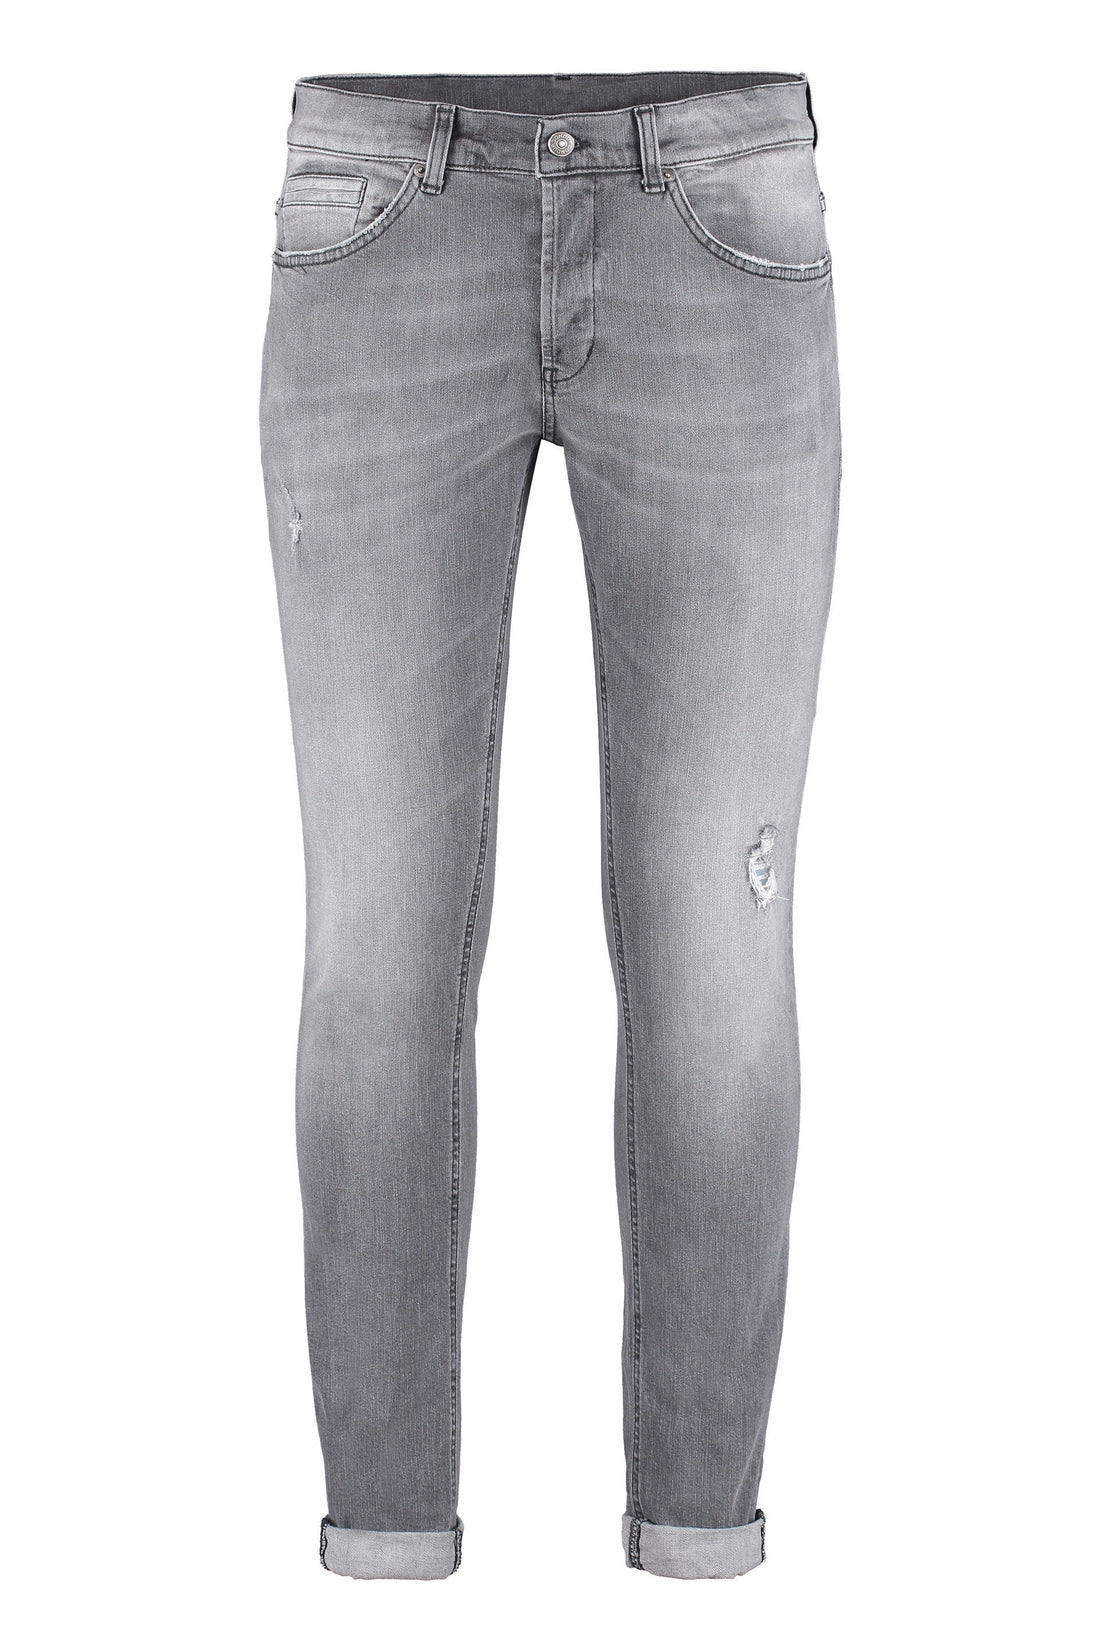 Dondup-OUTLET-SALE-George 5-pocket jeans-ARCHIVIST